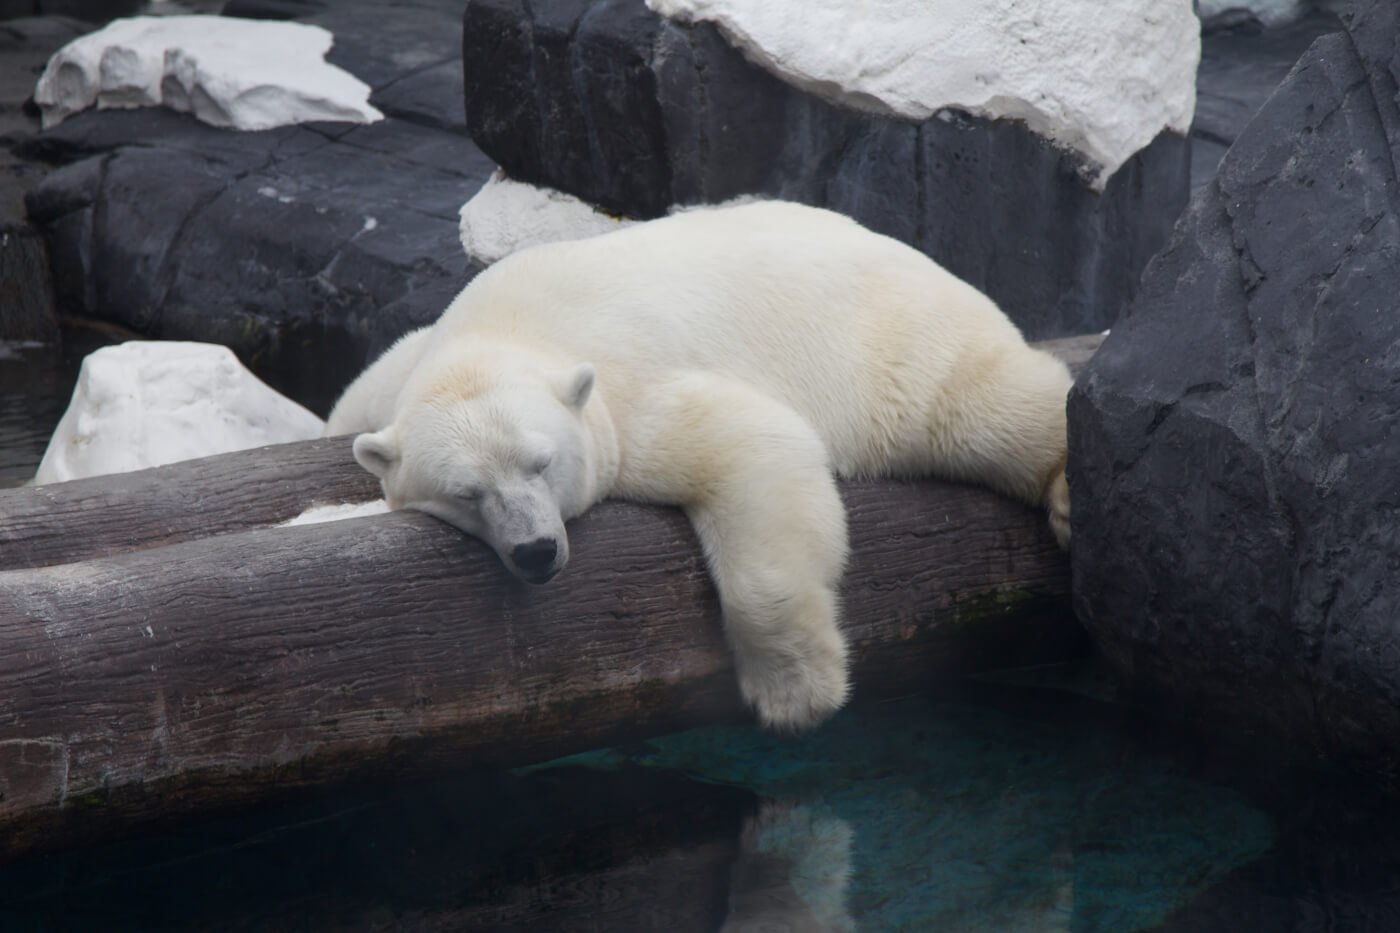 Szenja, a polar bear, sleeping on a log.